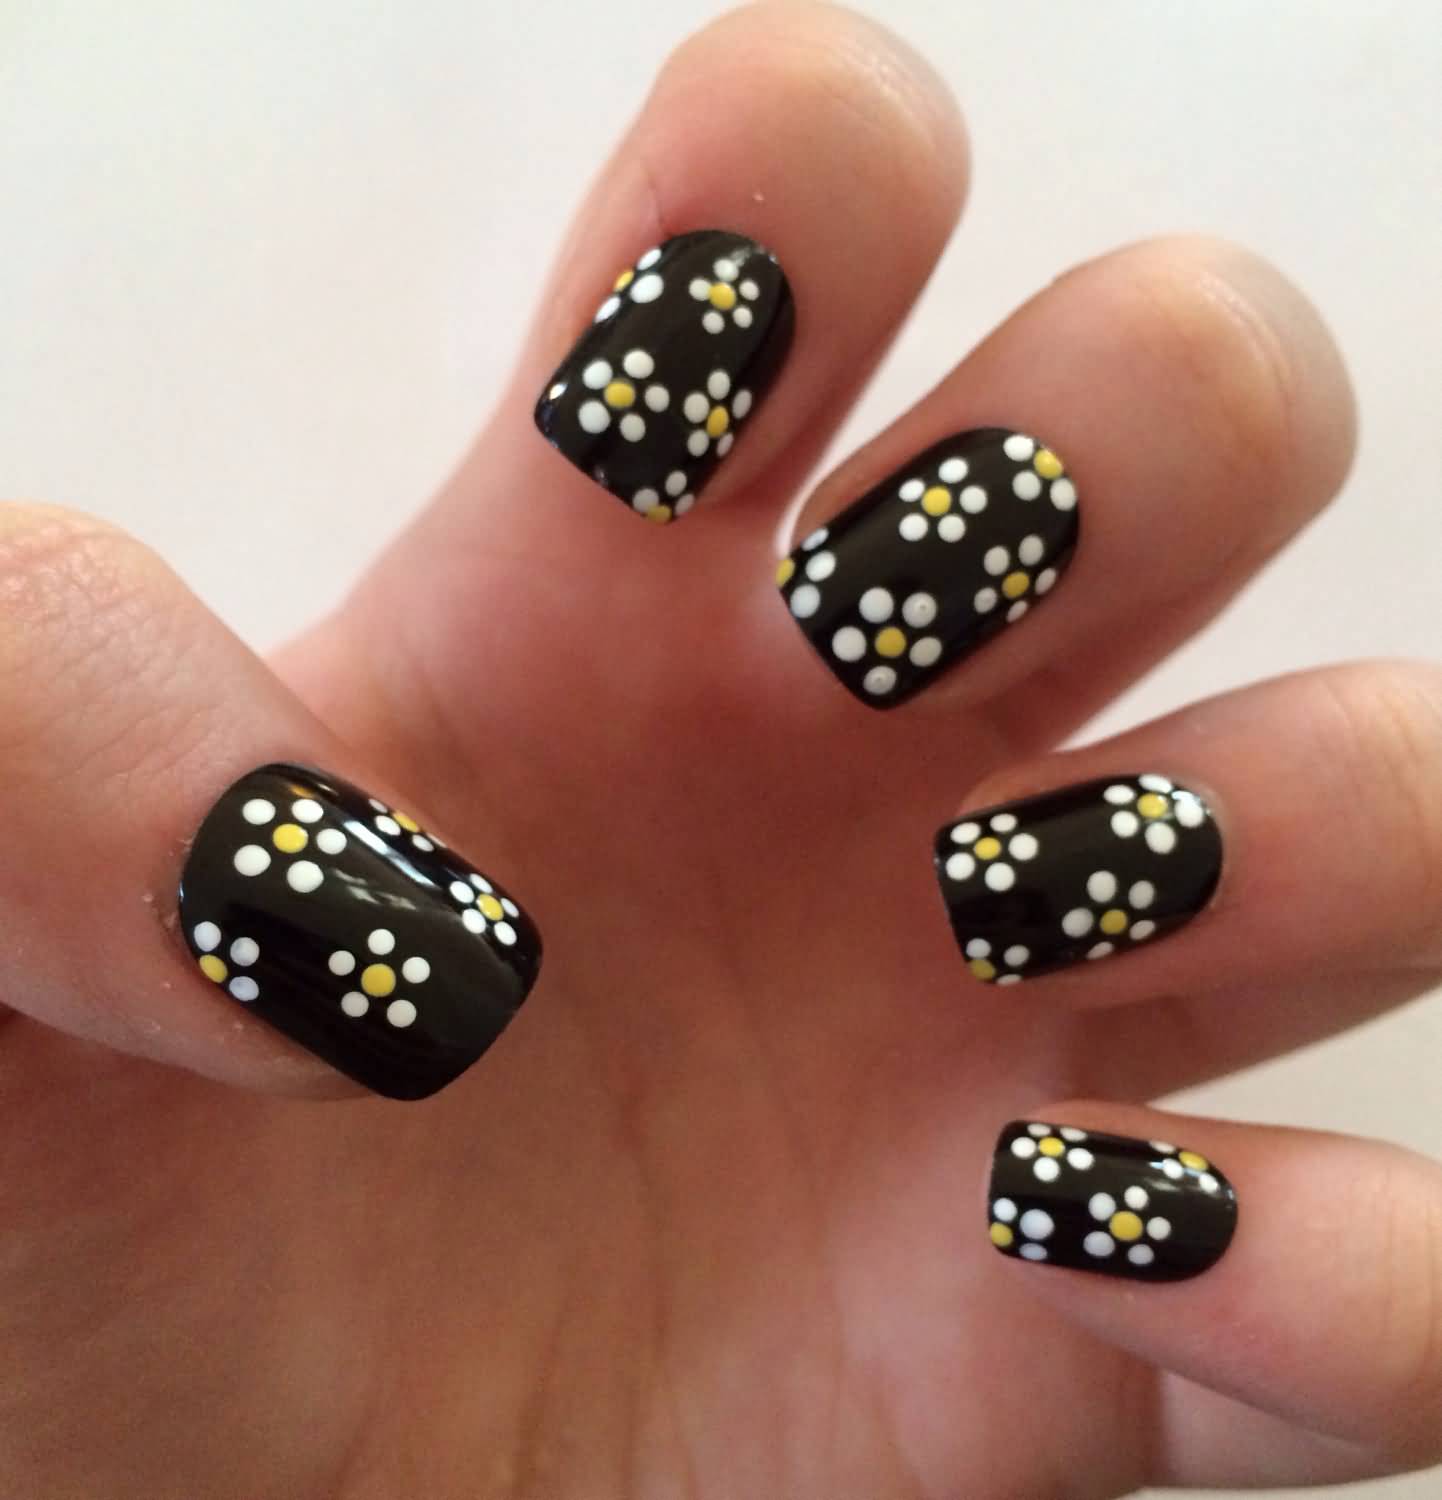 Black Glossy Nails With Daisy Acrylic Flower Nail Art